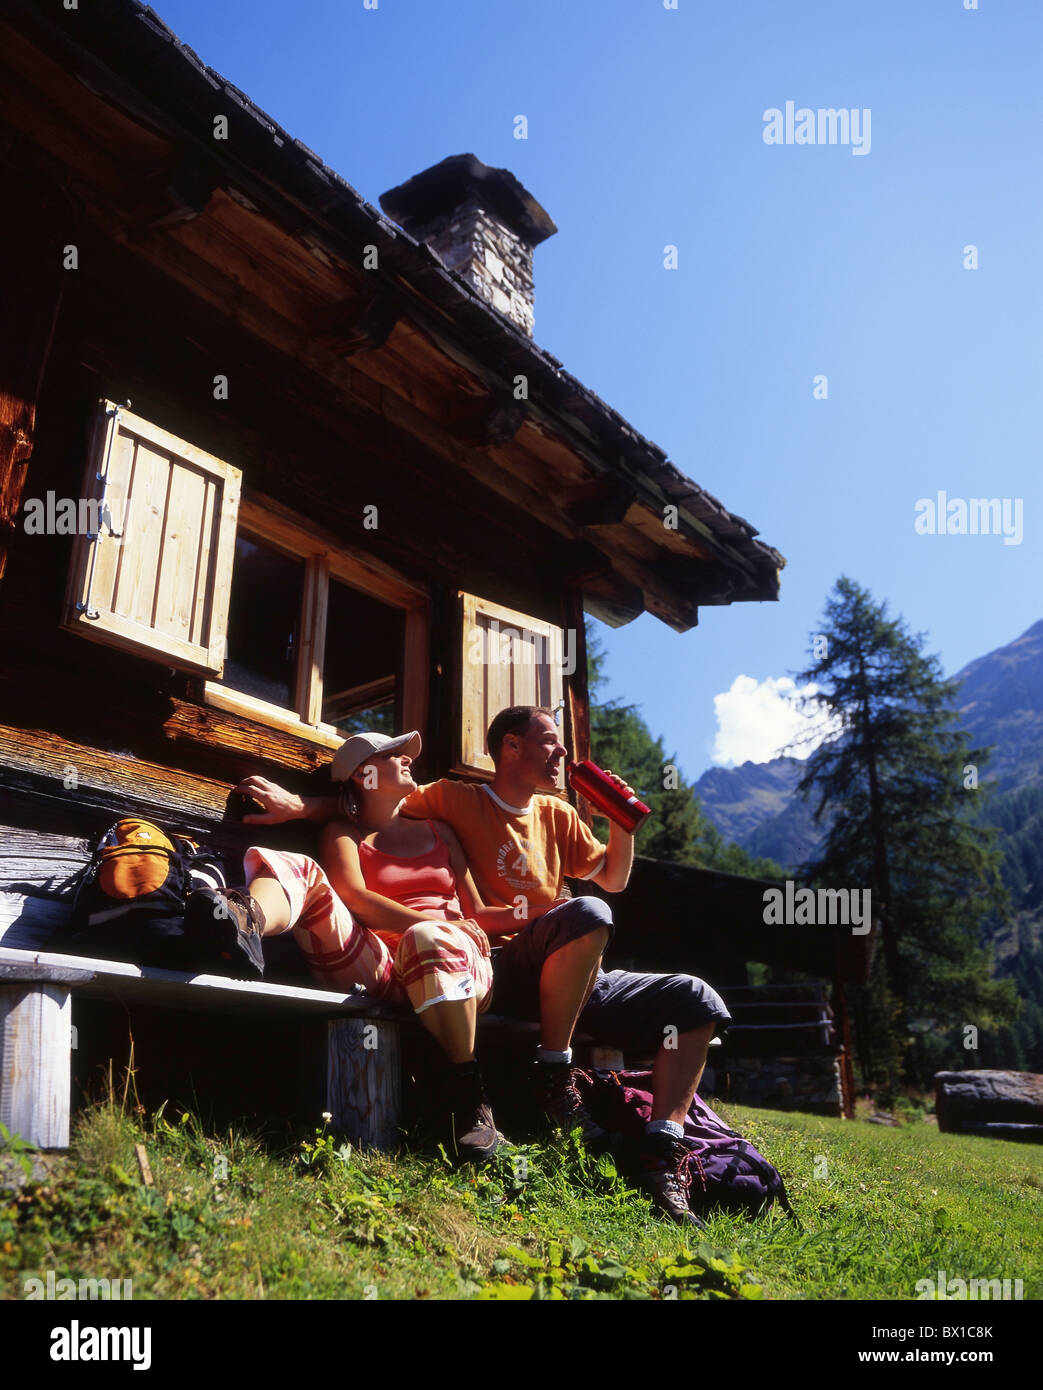 Senderismo caminante par relajarse descansar picnic cabaña chalet casa Montes Alpes cabaña alpina Vinschgau Italia Foto de stock